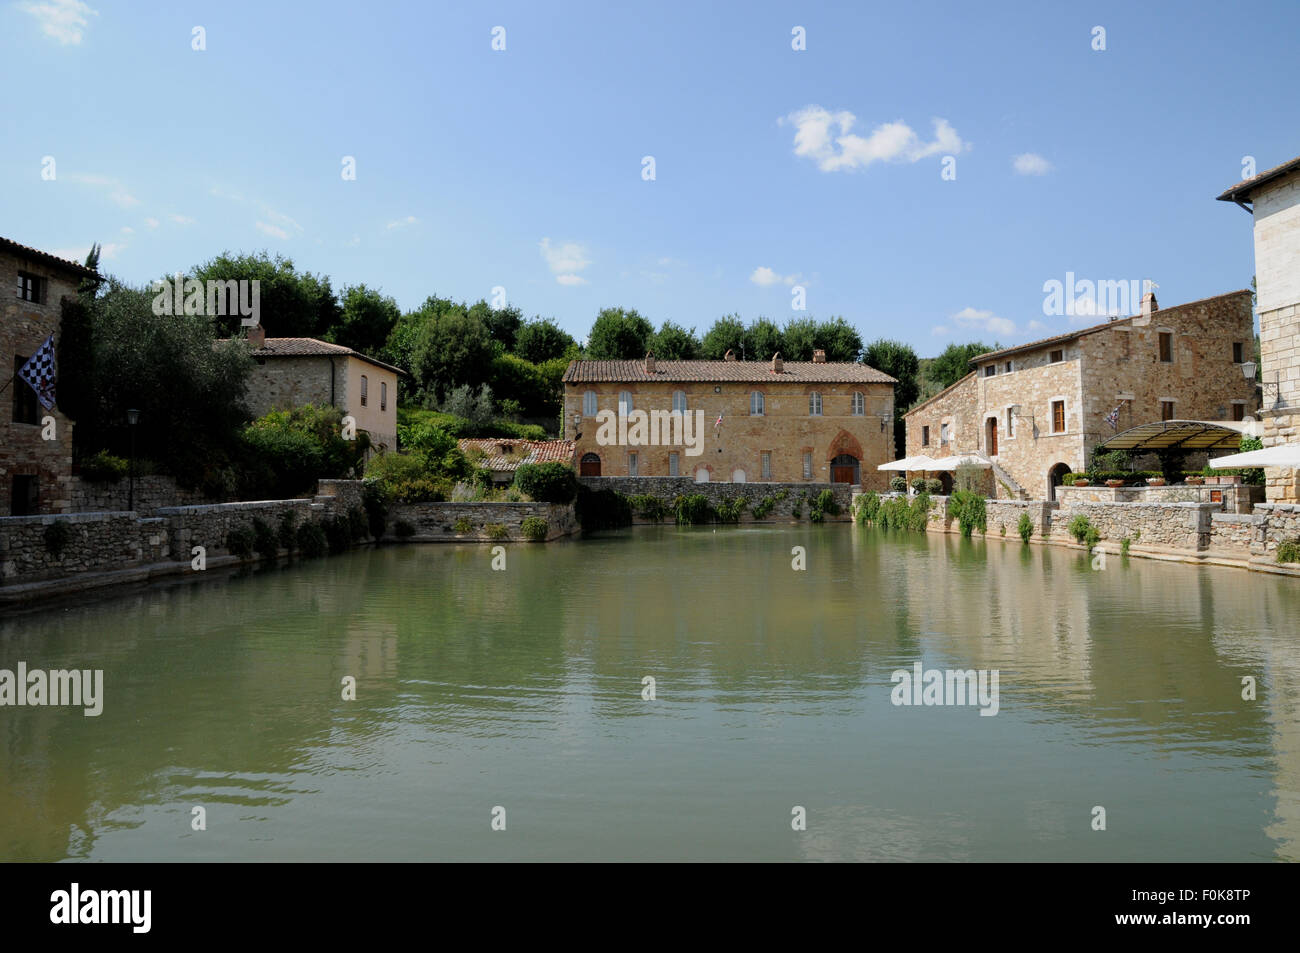 Le bolle d'acqua in piscina nel piccolo centro termale medievale borgo di Vignoni bagna nella Toscana centrale. Foto Stock